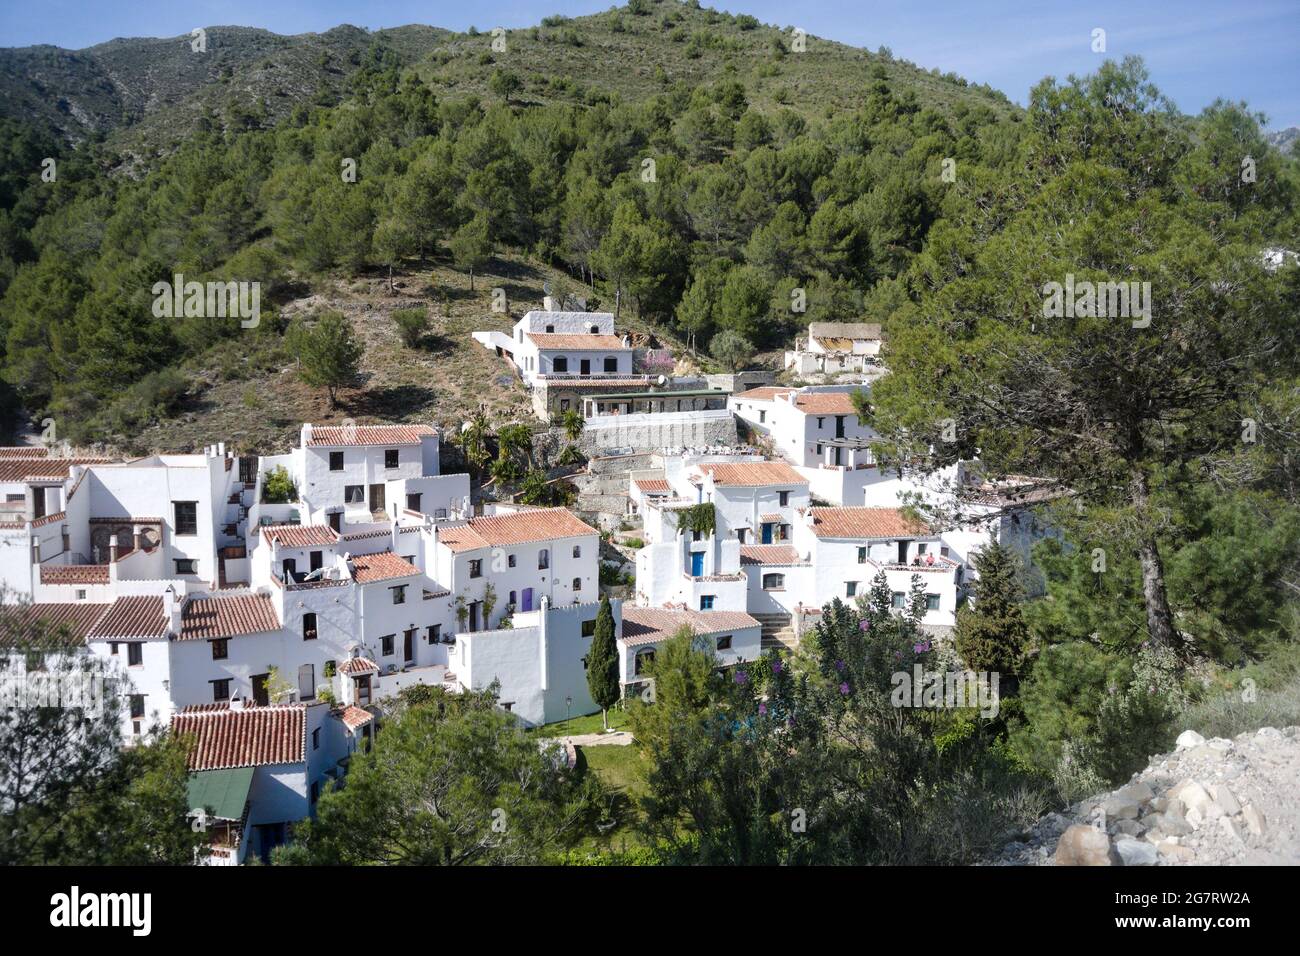 Grazioso villaggio spagnolo di El Acebuchal. Vista ad alto angolo del piccolo borgo con le tradizionali case cittadine dipinte di bianco. Aspetto orizzontale. Sfondo di Foto Stock